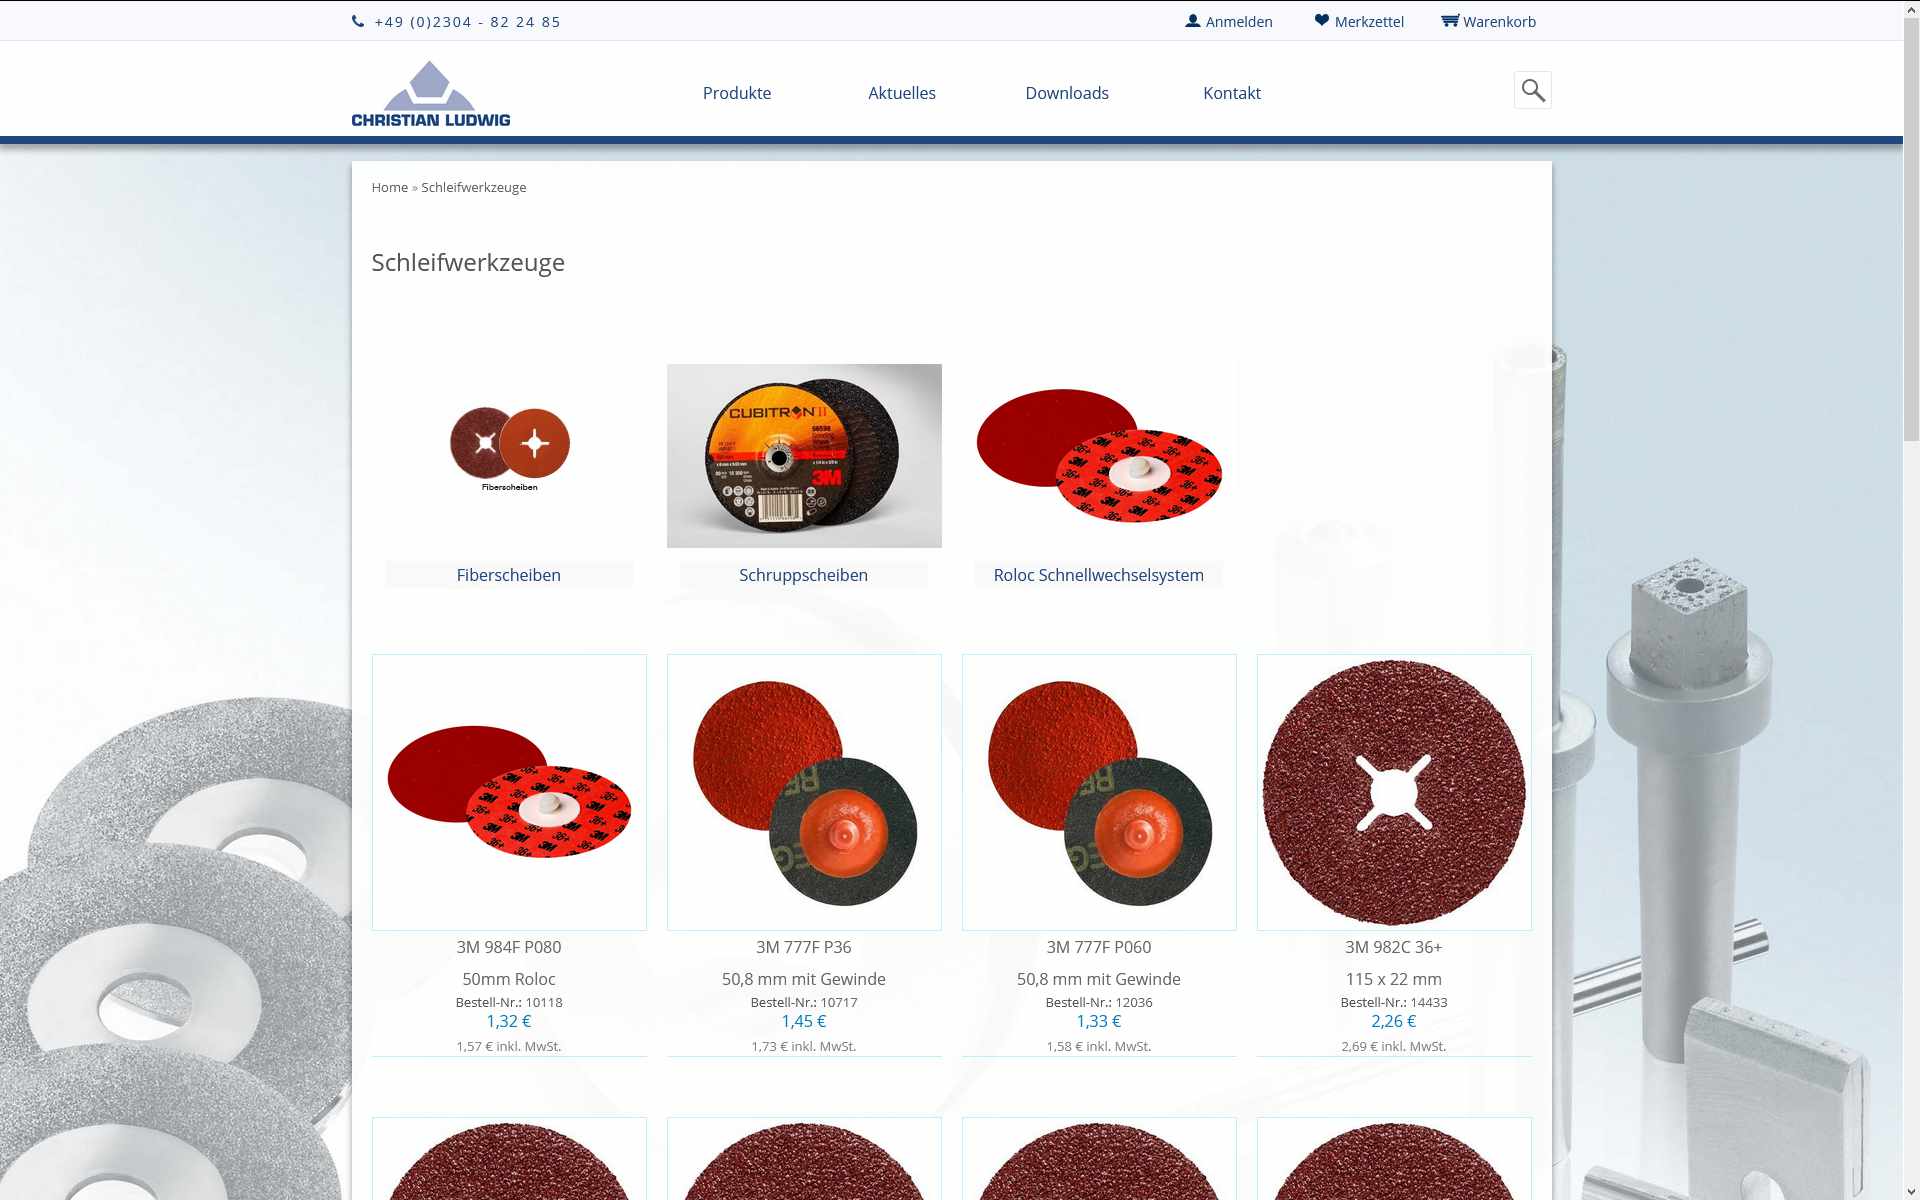 Onlineshop und Website der Christian Ludwig & Co. GmbH